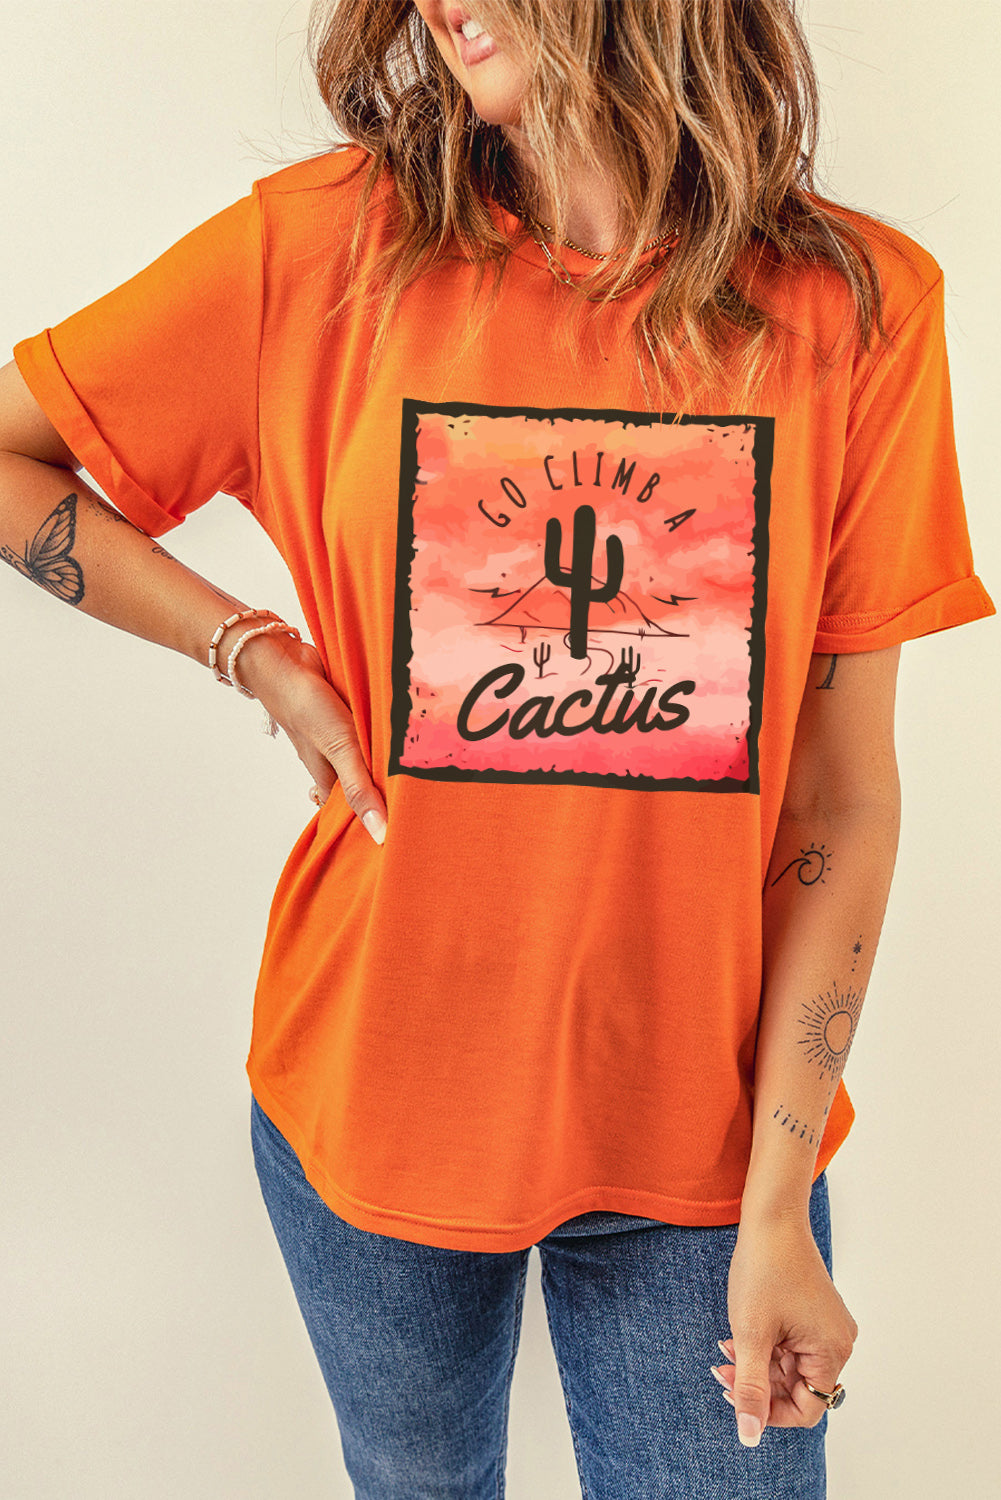 Go Climb A Cactus | Graphic Tee Shirt